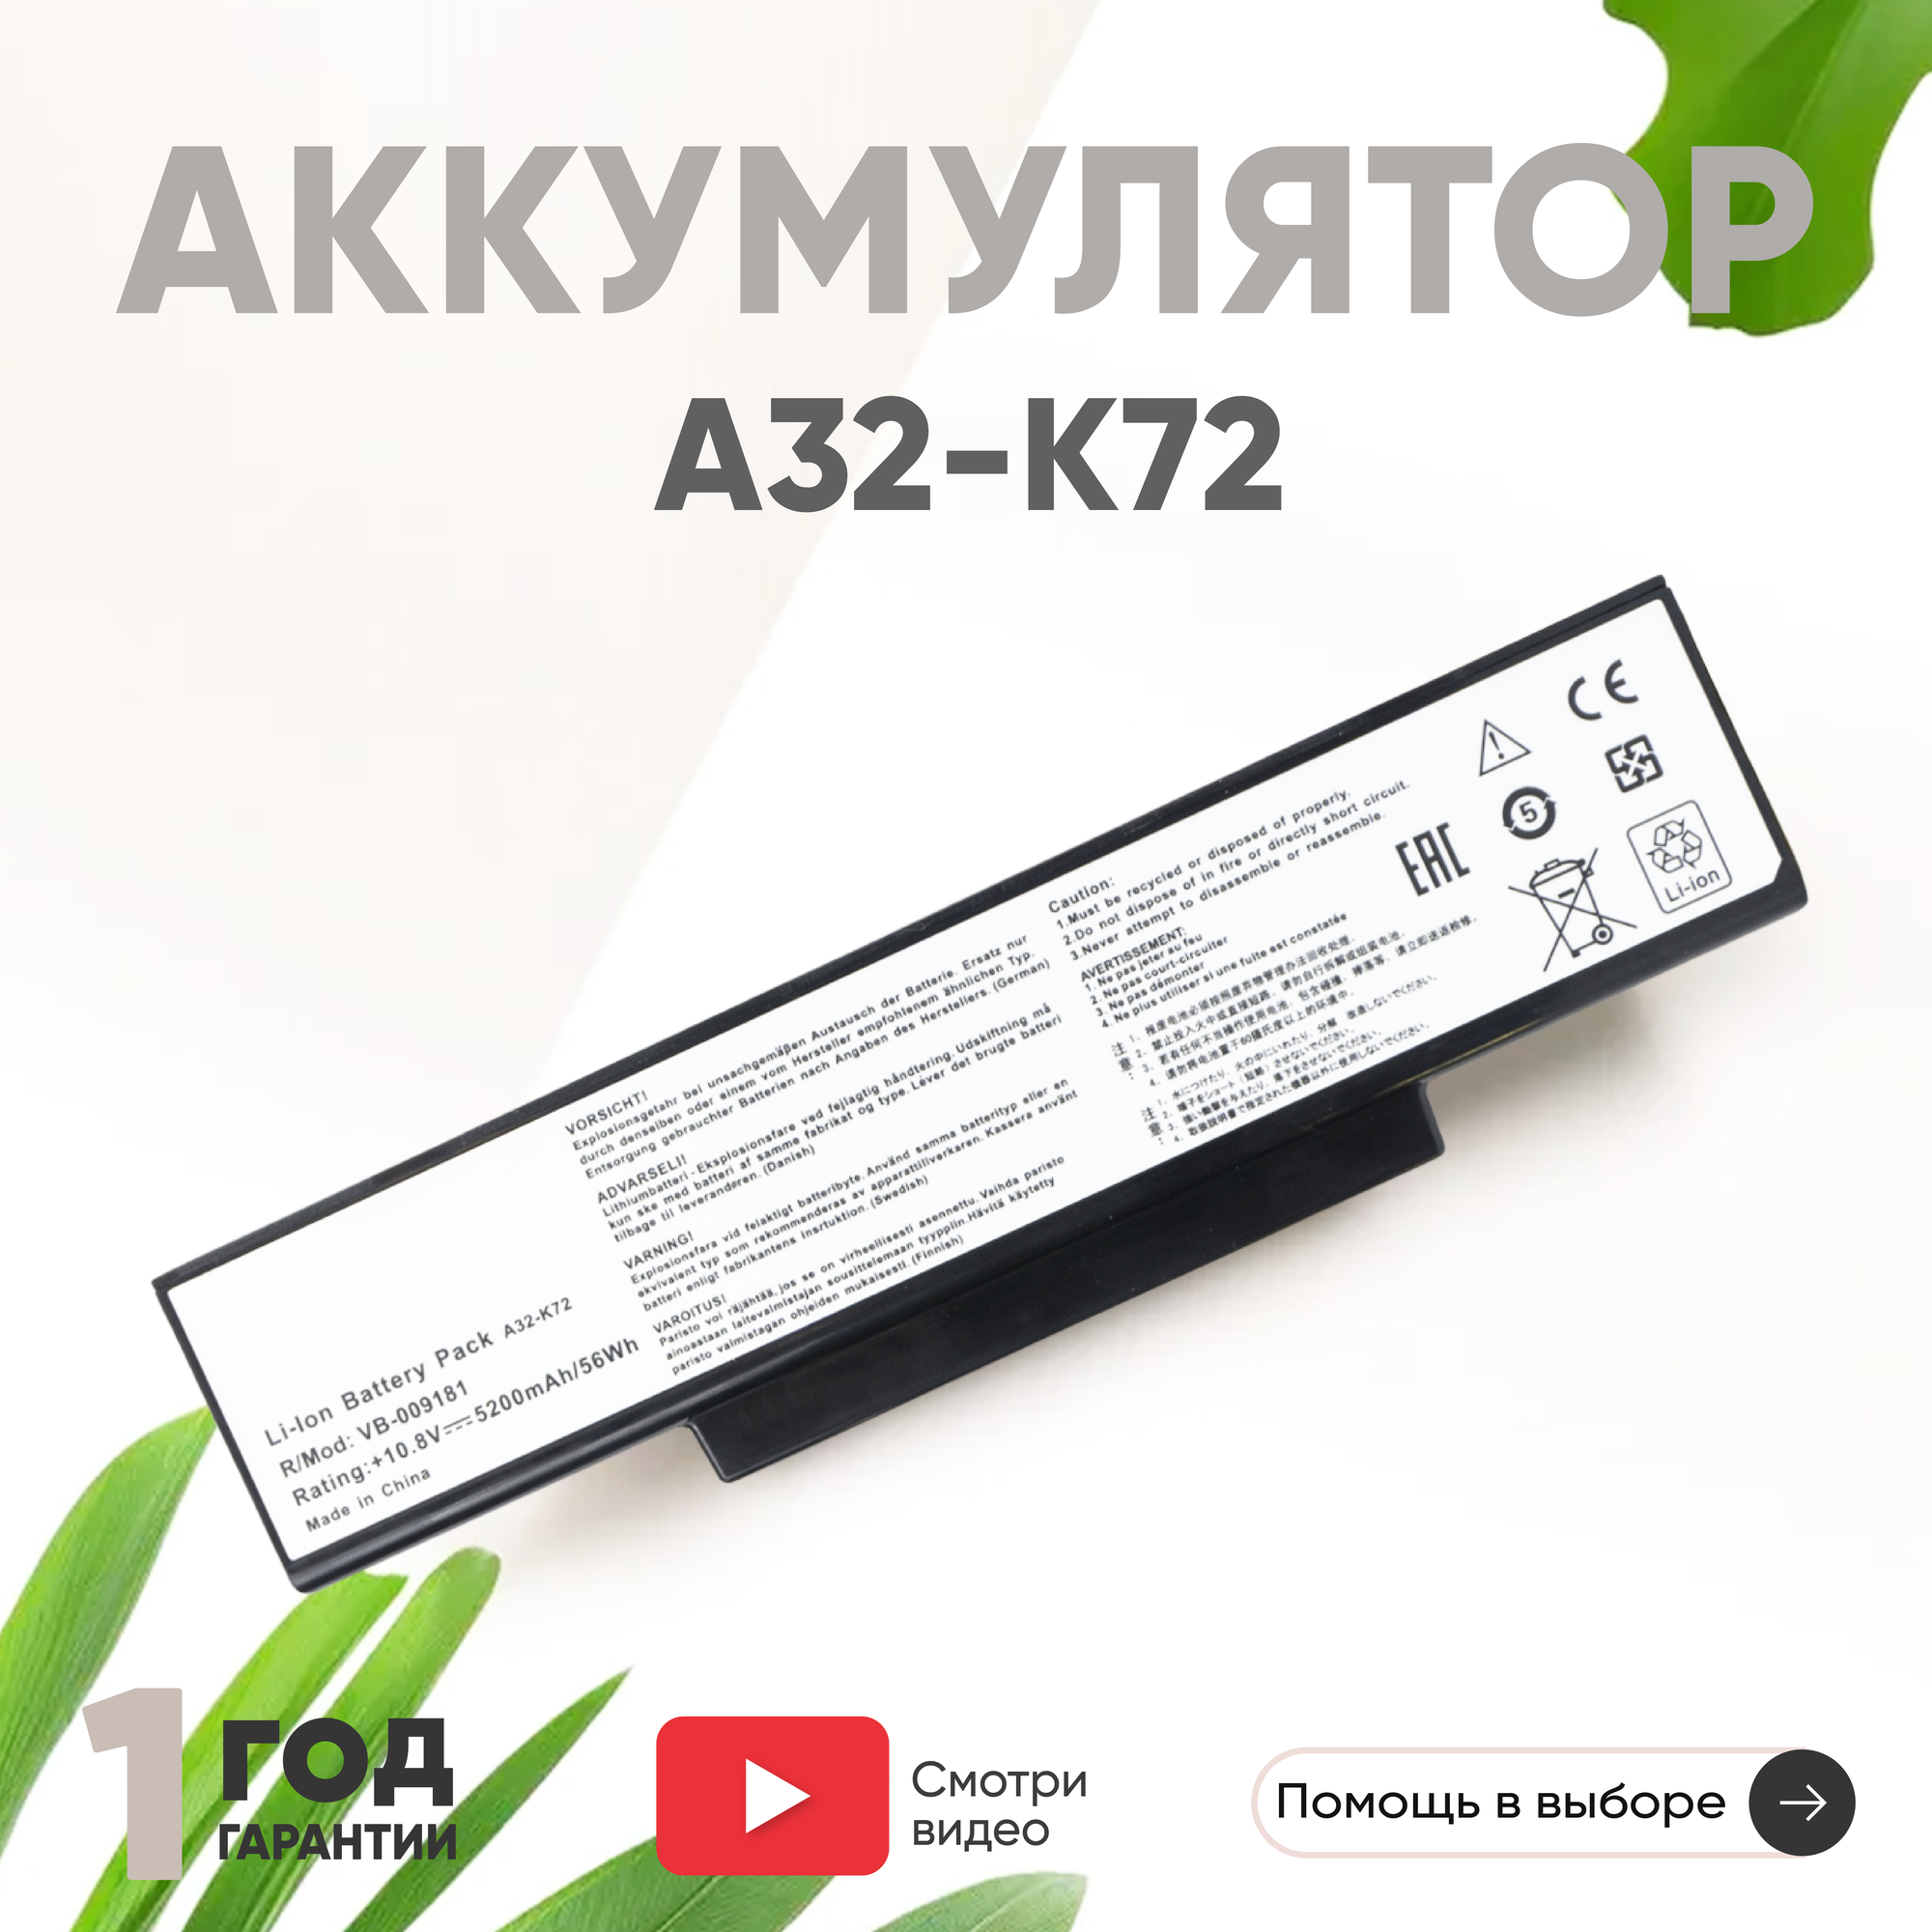 Аккумулятор (АКБ, аккумуляторная батарея) A32-K72 для ноутбука Asus N73sv, N73s, K73s, K72f, K73e, K73sv, K73t, K72dr, 5200мАч, 10.8В